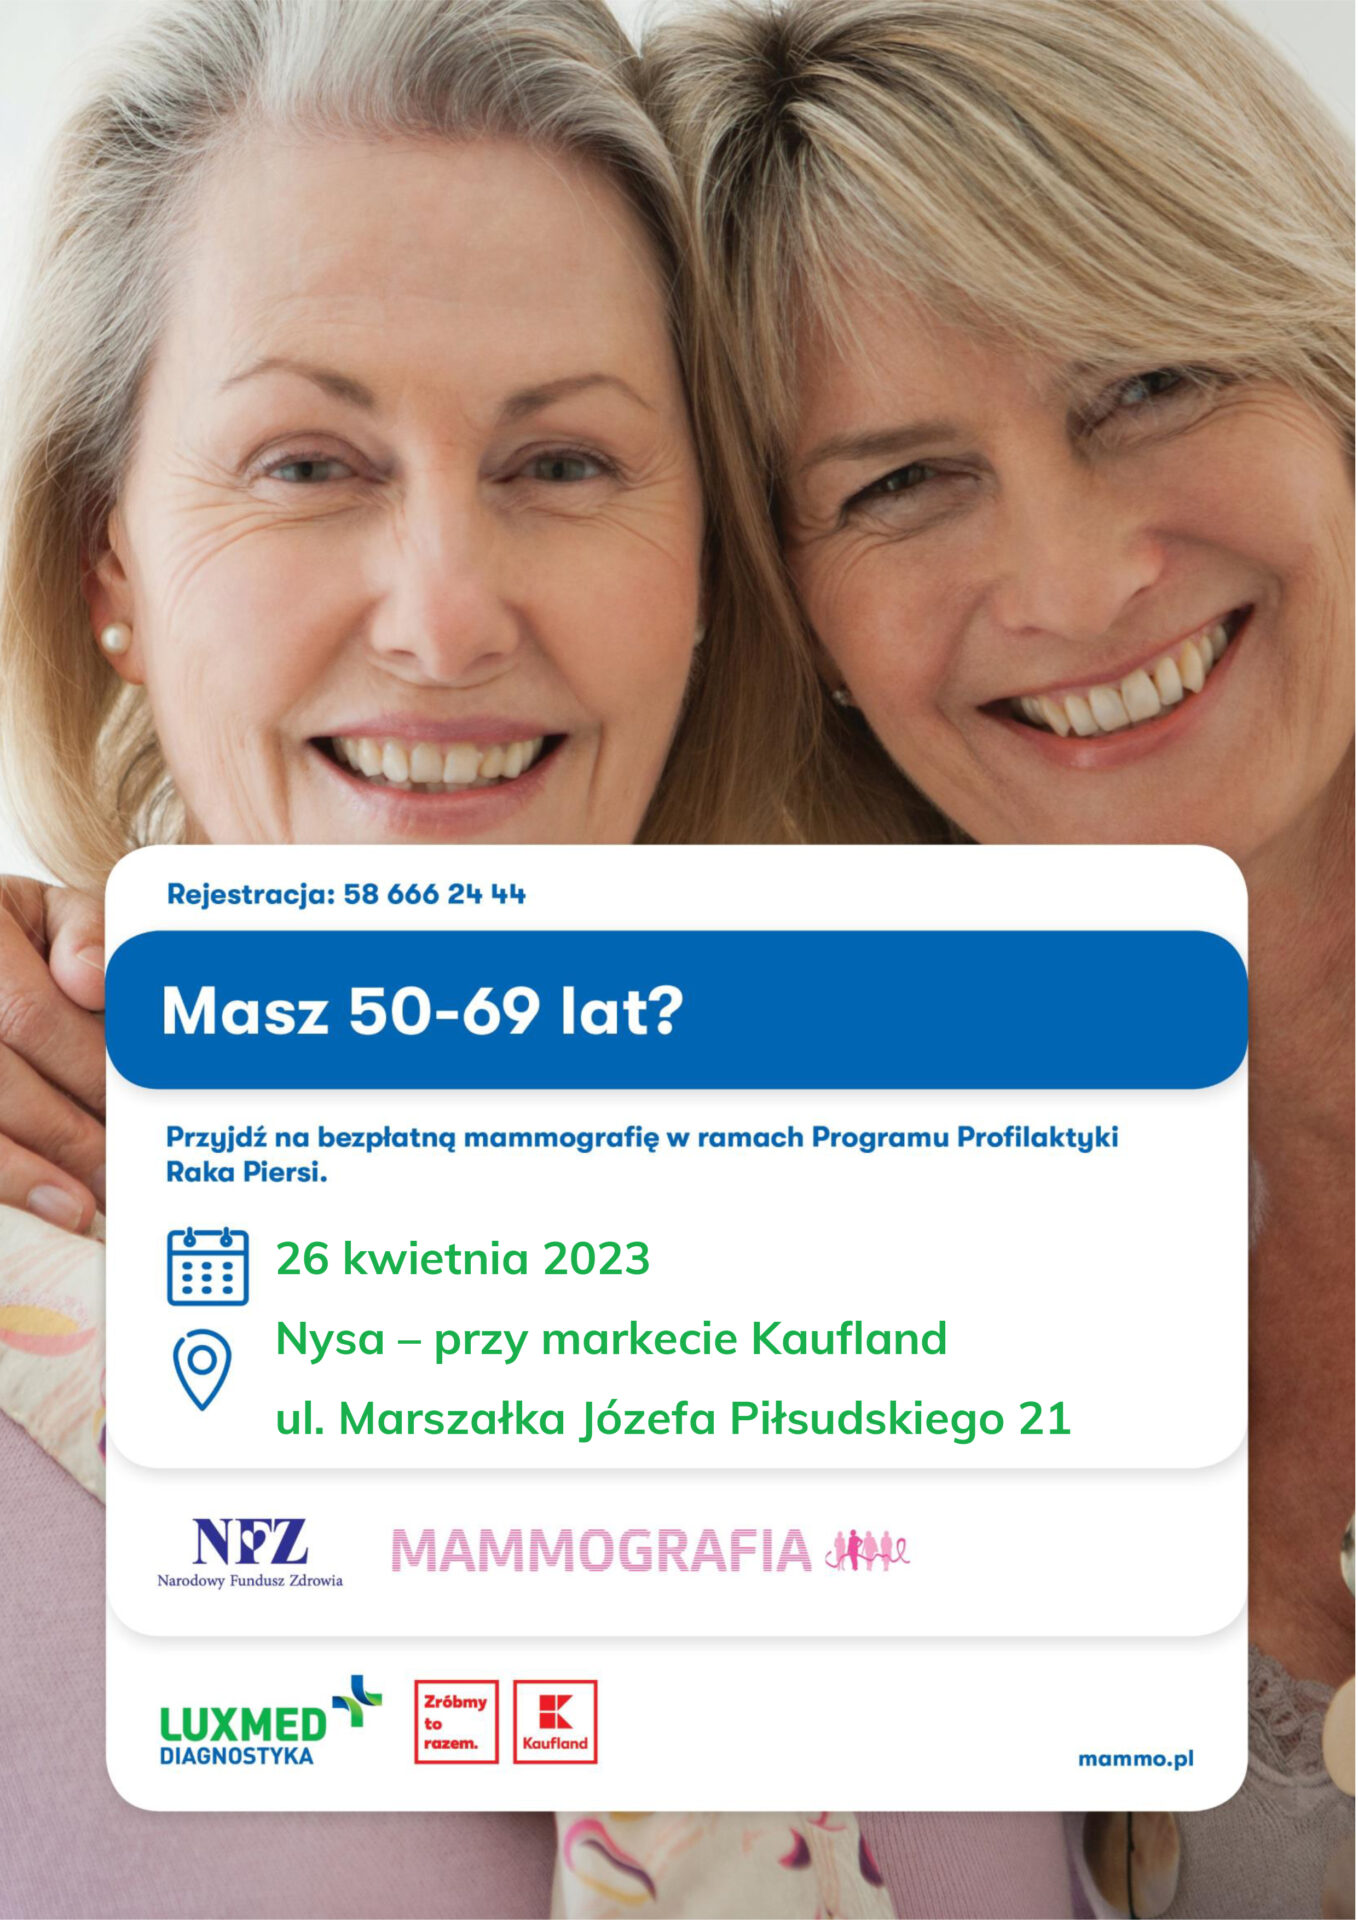 Mammografia w Nysie 26 kwietnia